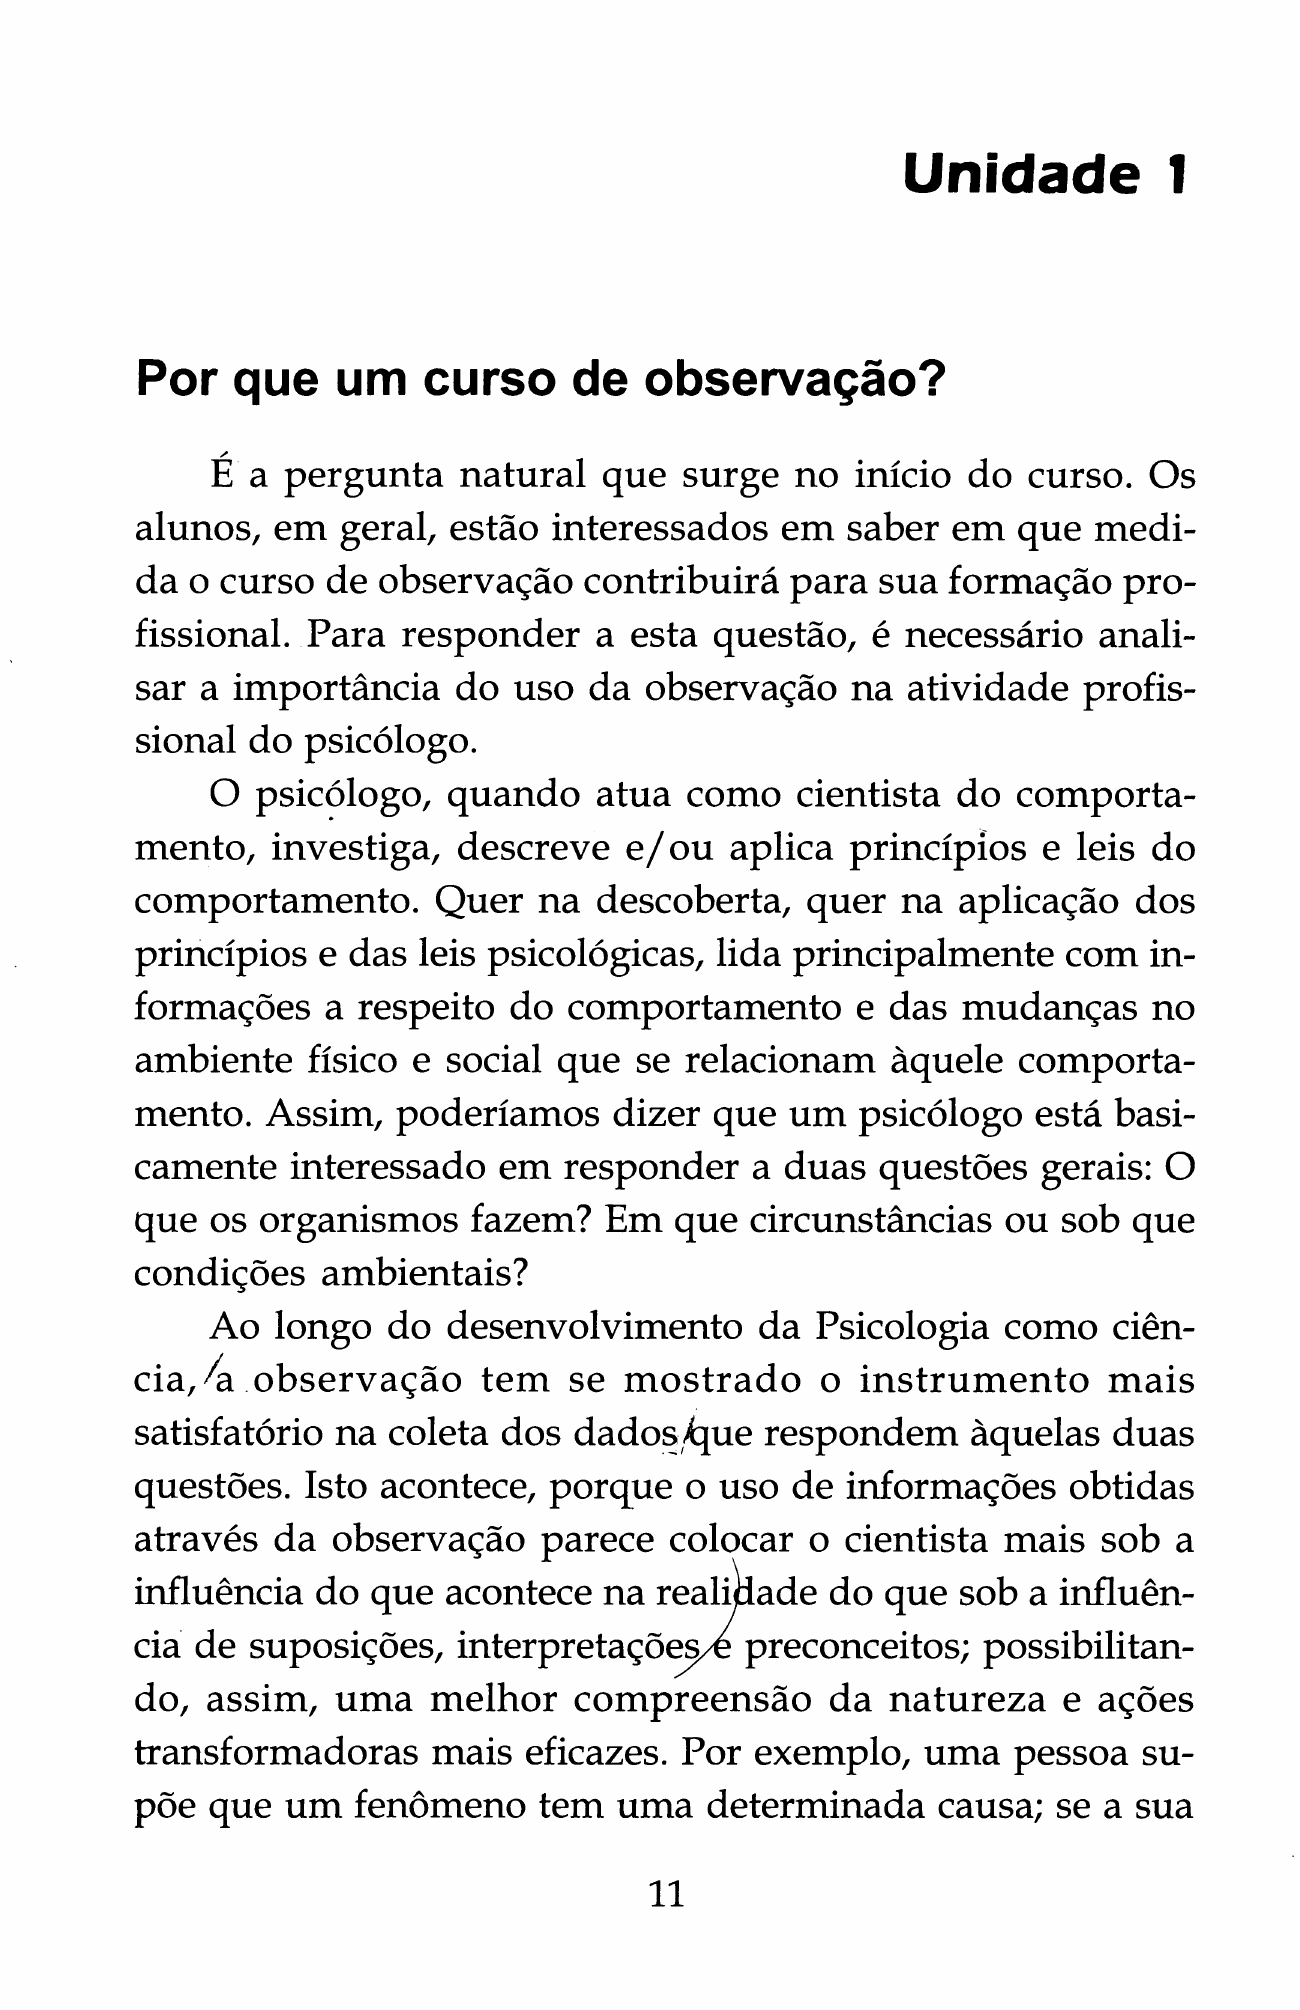 Danna, M. F. & Matos, M. A. (2011). Aprendendo a observar (Cap.1) - Análise  do Comportamento Humano